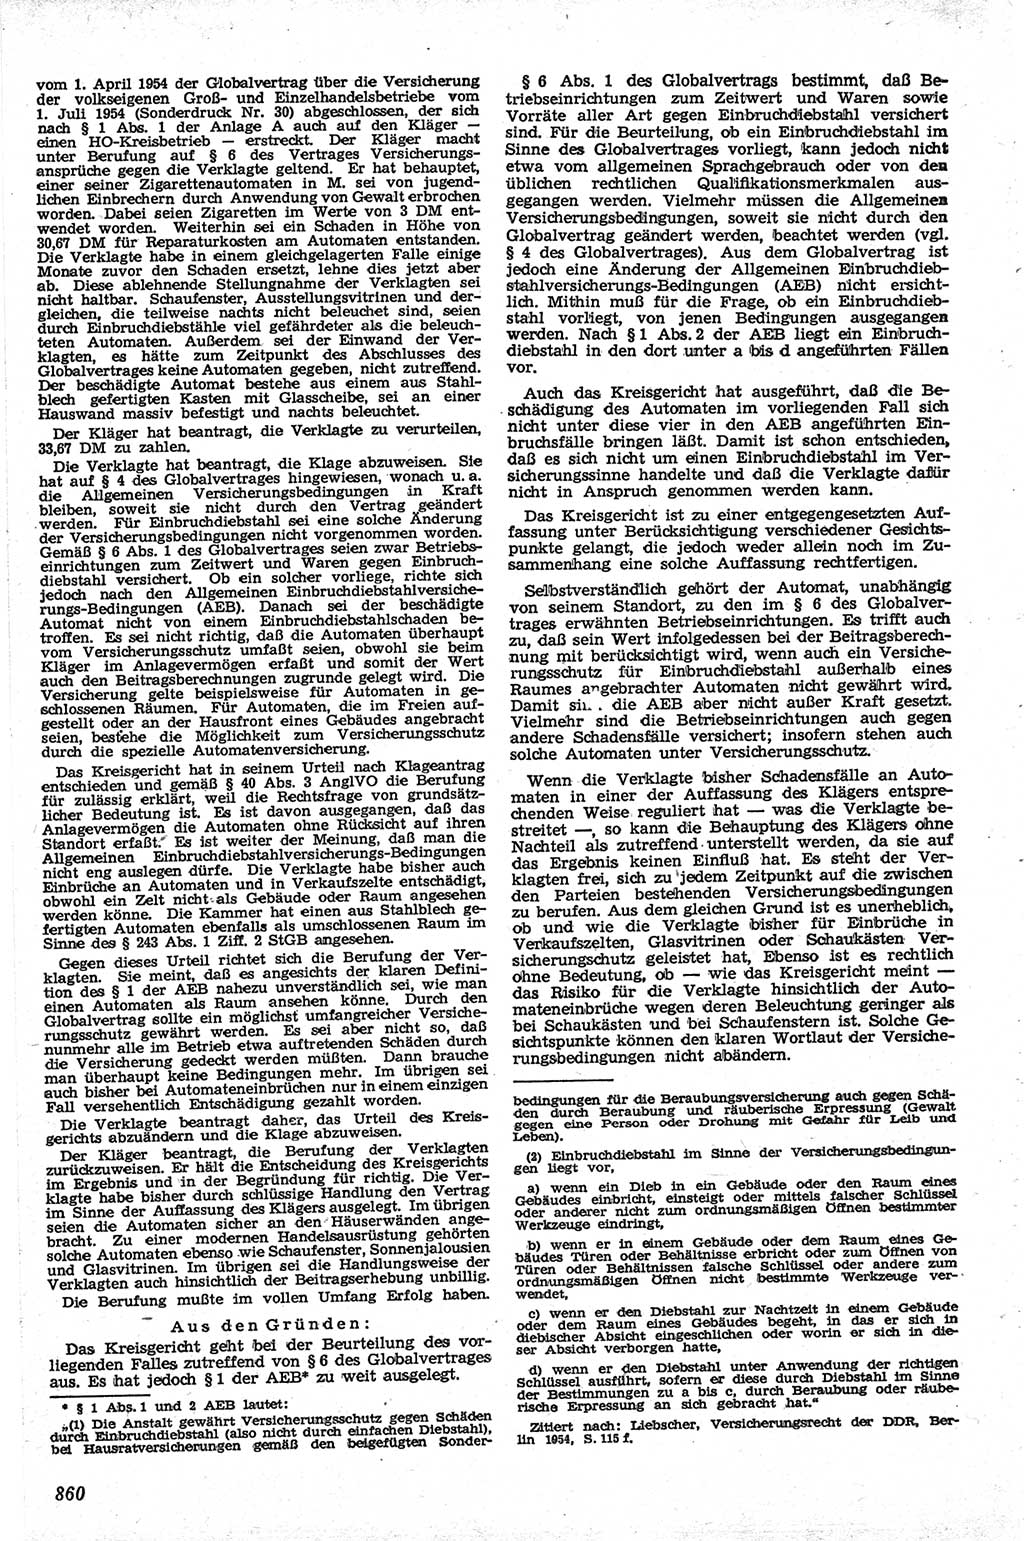 Neue Justiz (NJ), Zeitschrift für Recht und Rechtswissenschaft [Deutsche Demokratische Republik (DDR)], 13. Jahrgang 1959, Seite 860 (NJ DDR 1959, S. 860)